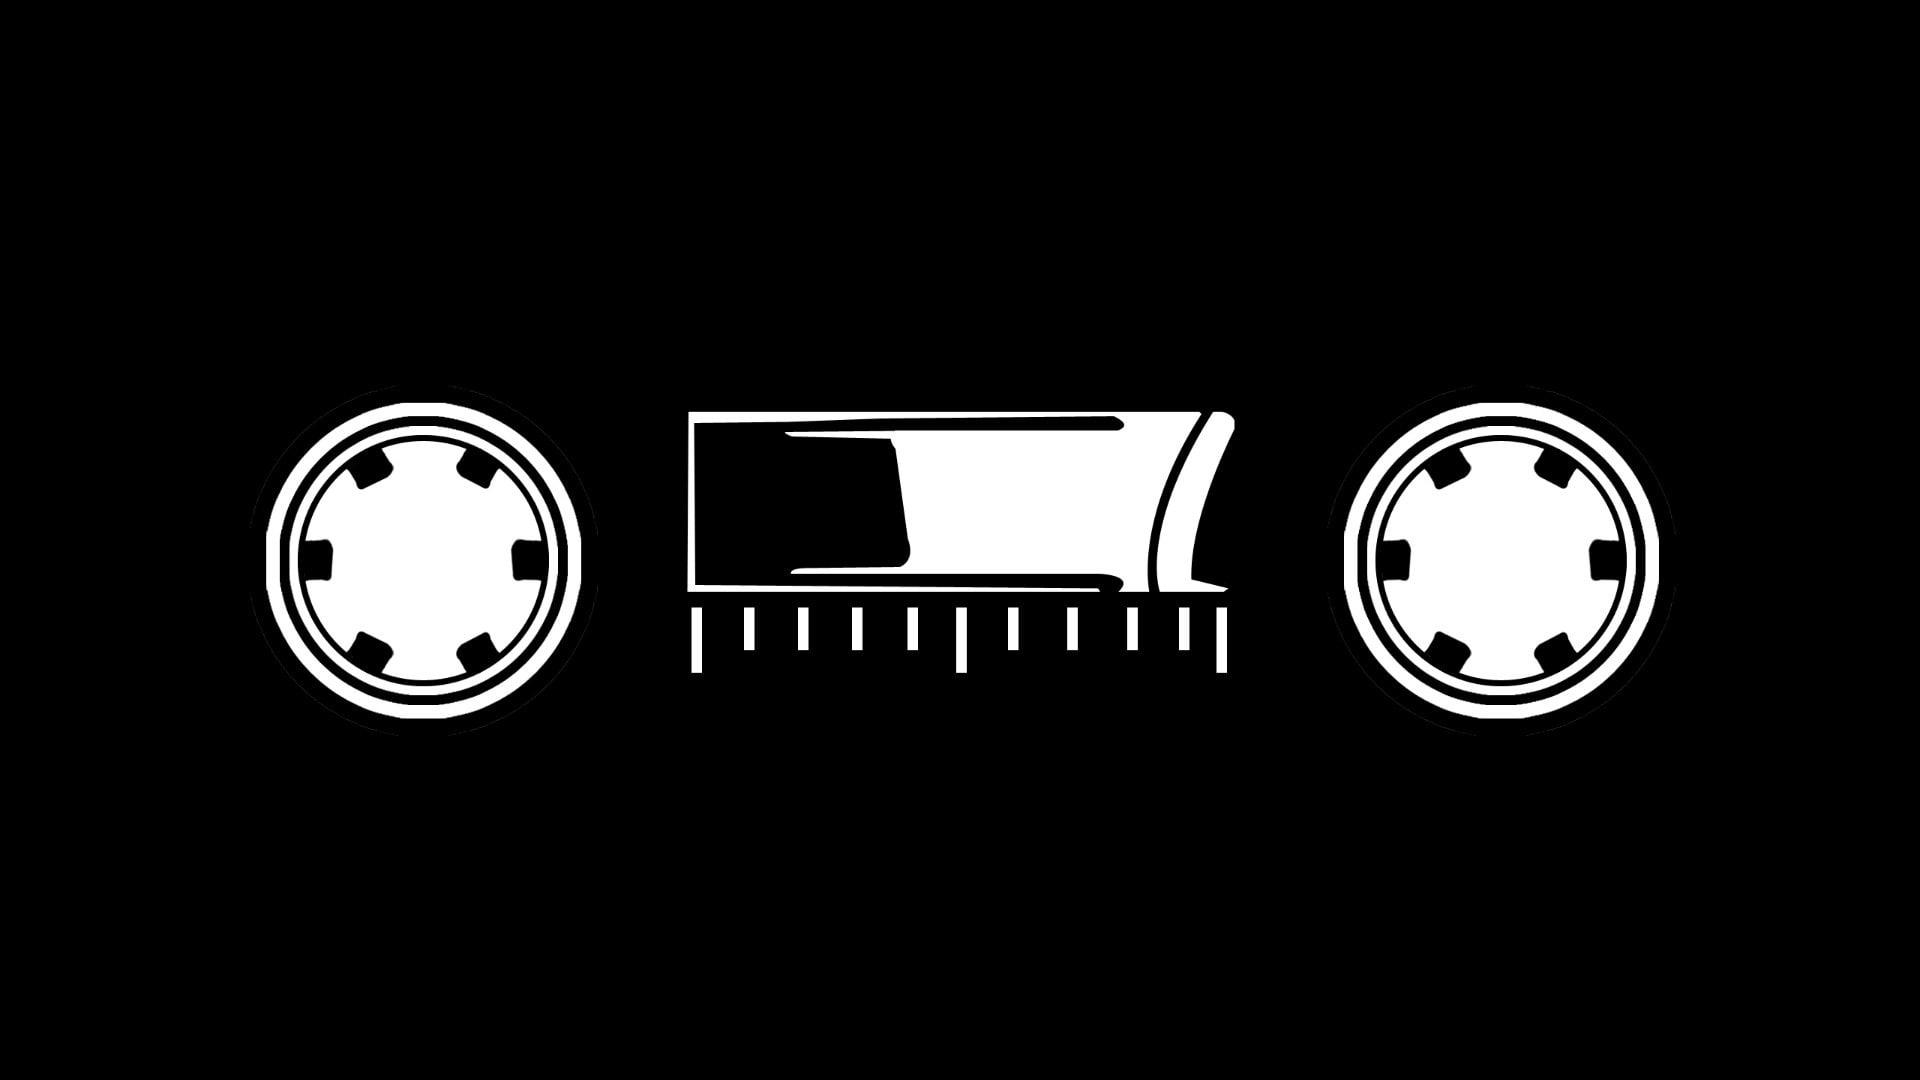 Cassette Logo - HD wallpaper: black cassette tape illustration, logo, bones, tracker ...